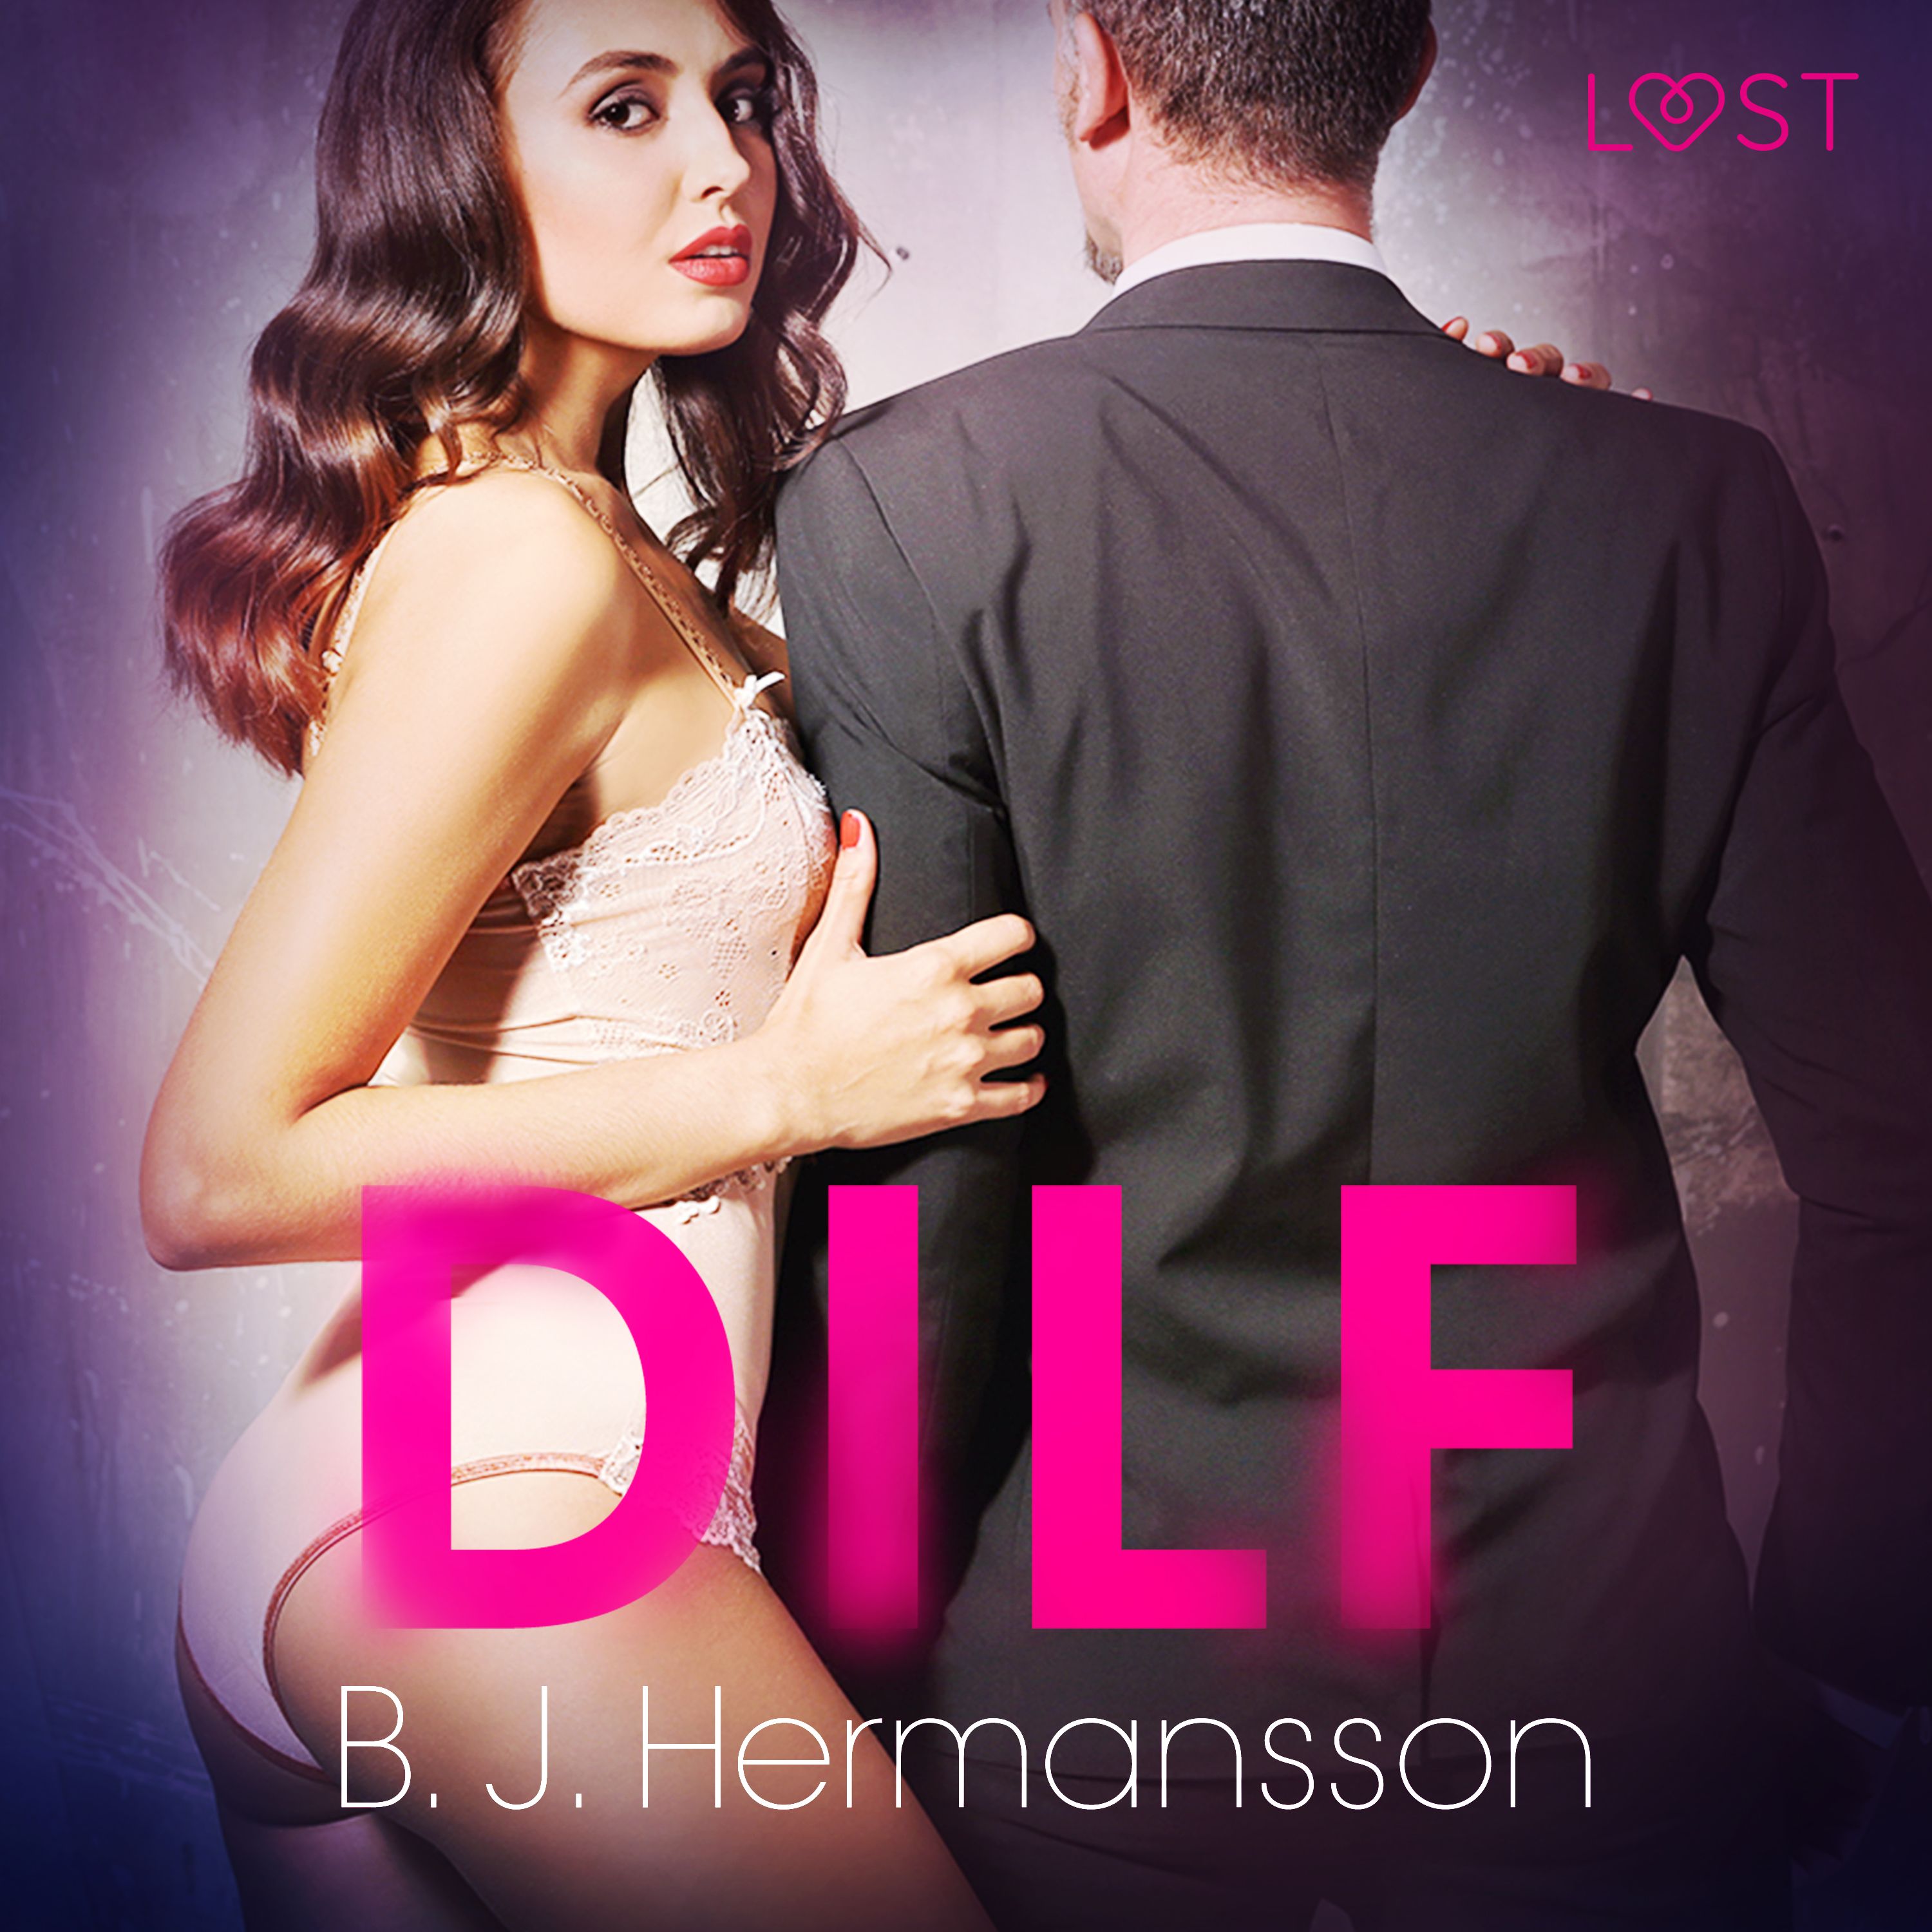 DILF – Erotisk novelle, ljudbok av B. J. Hermansson